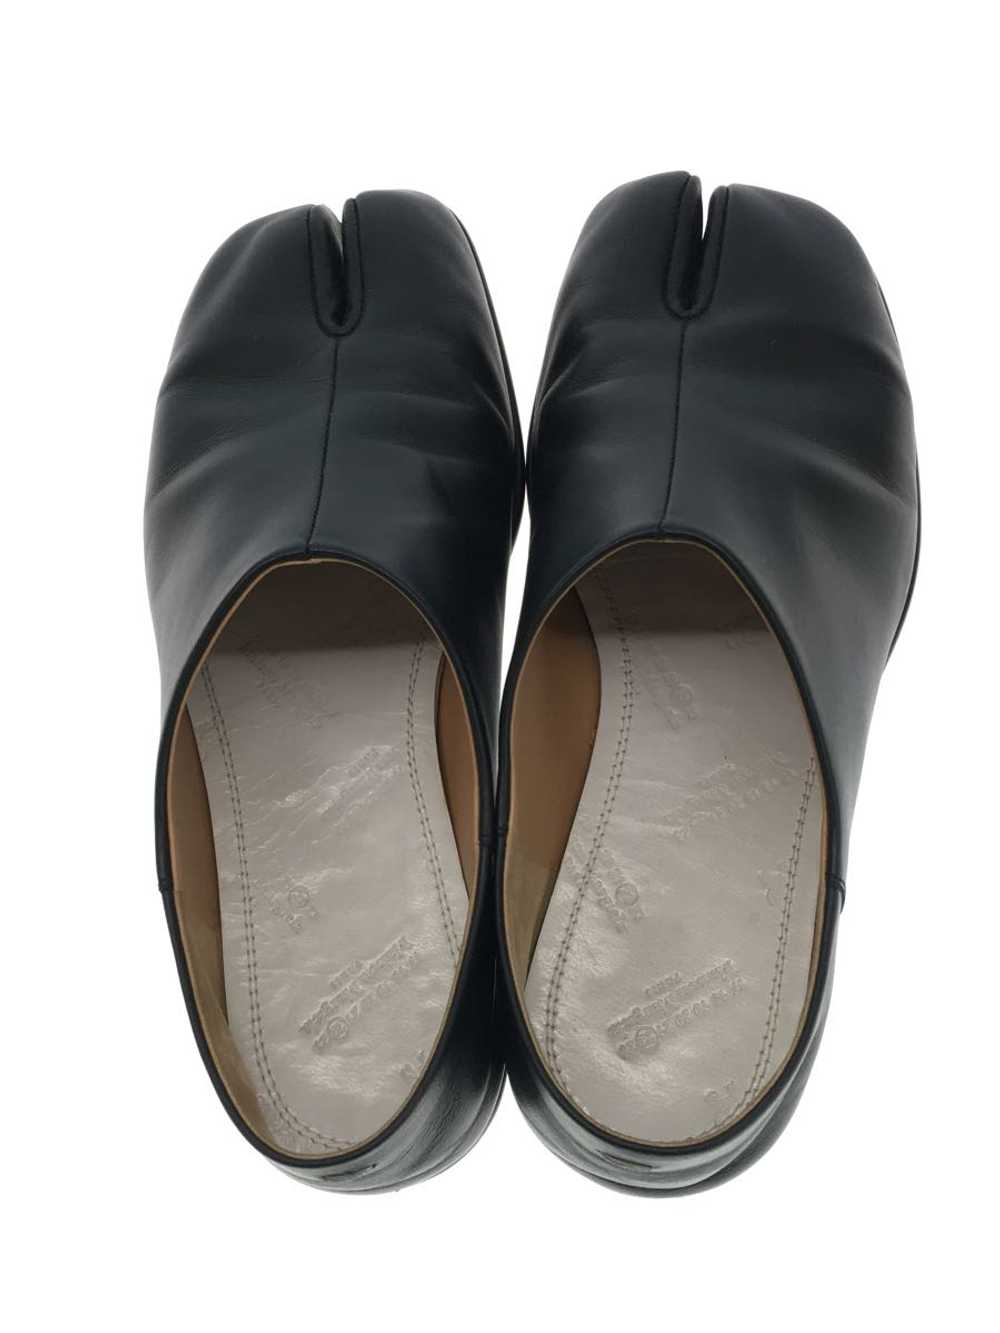 Maison Margiela Shoes/36/Blk/Leather/S58Wr0033 Sh… - image 3